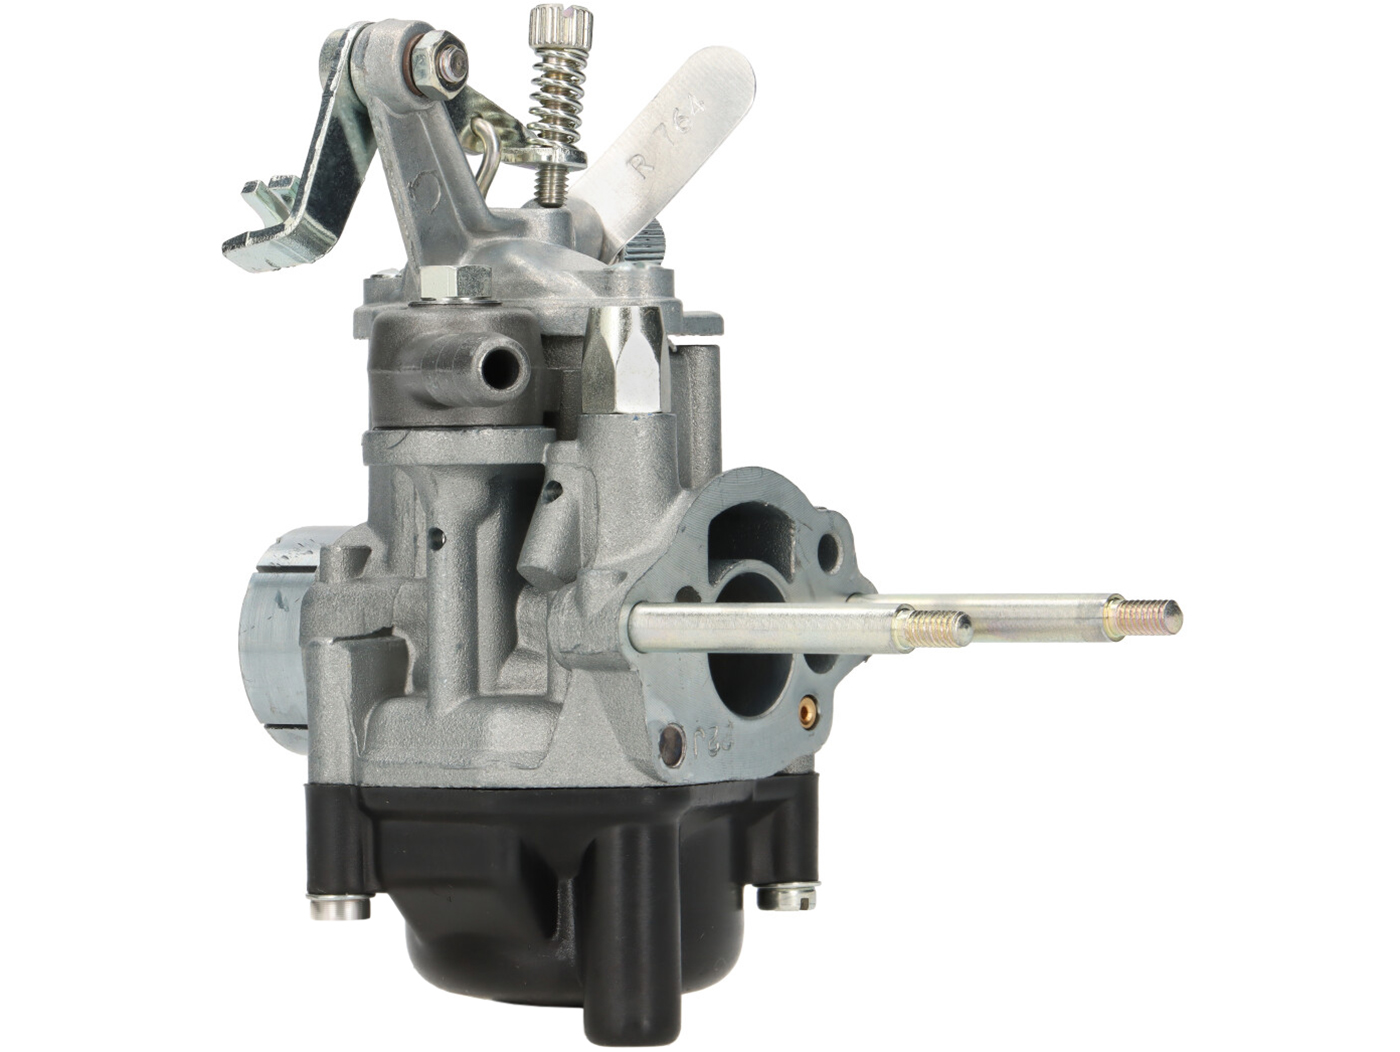 Vespatime - DELLORTO SHBC 18-16 Vergaser (896) für APE 50 - P50 - Anschluss  am Motor D.23 mm - ERSATZTEILE VESPA